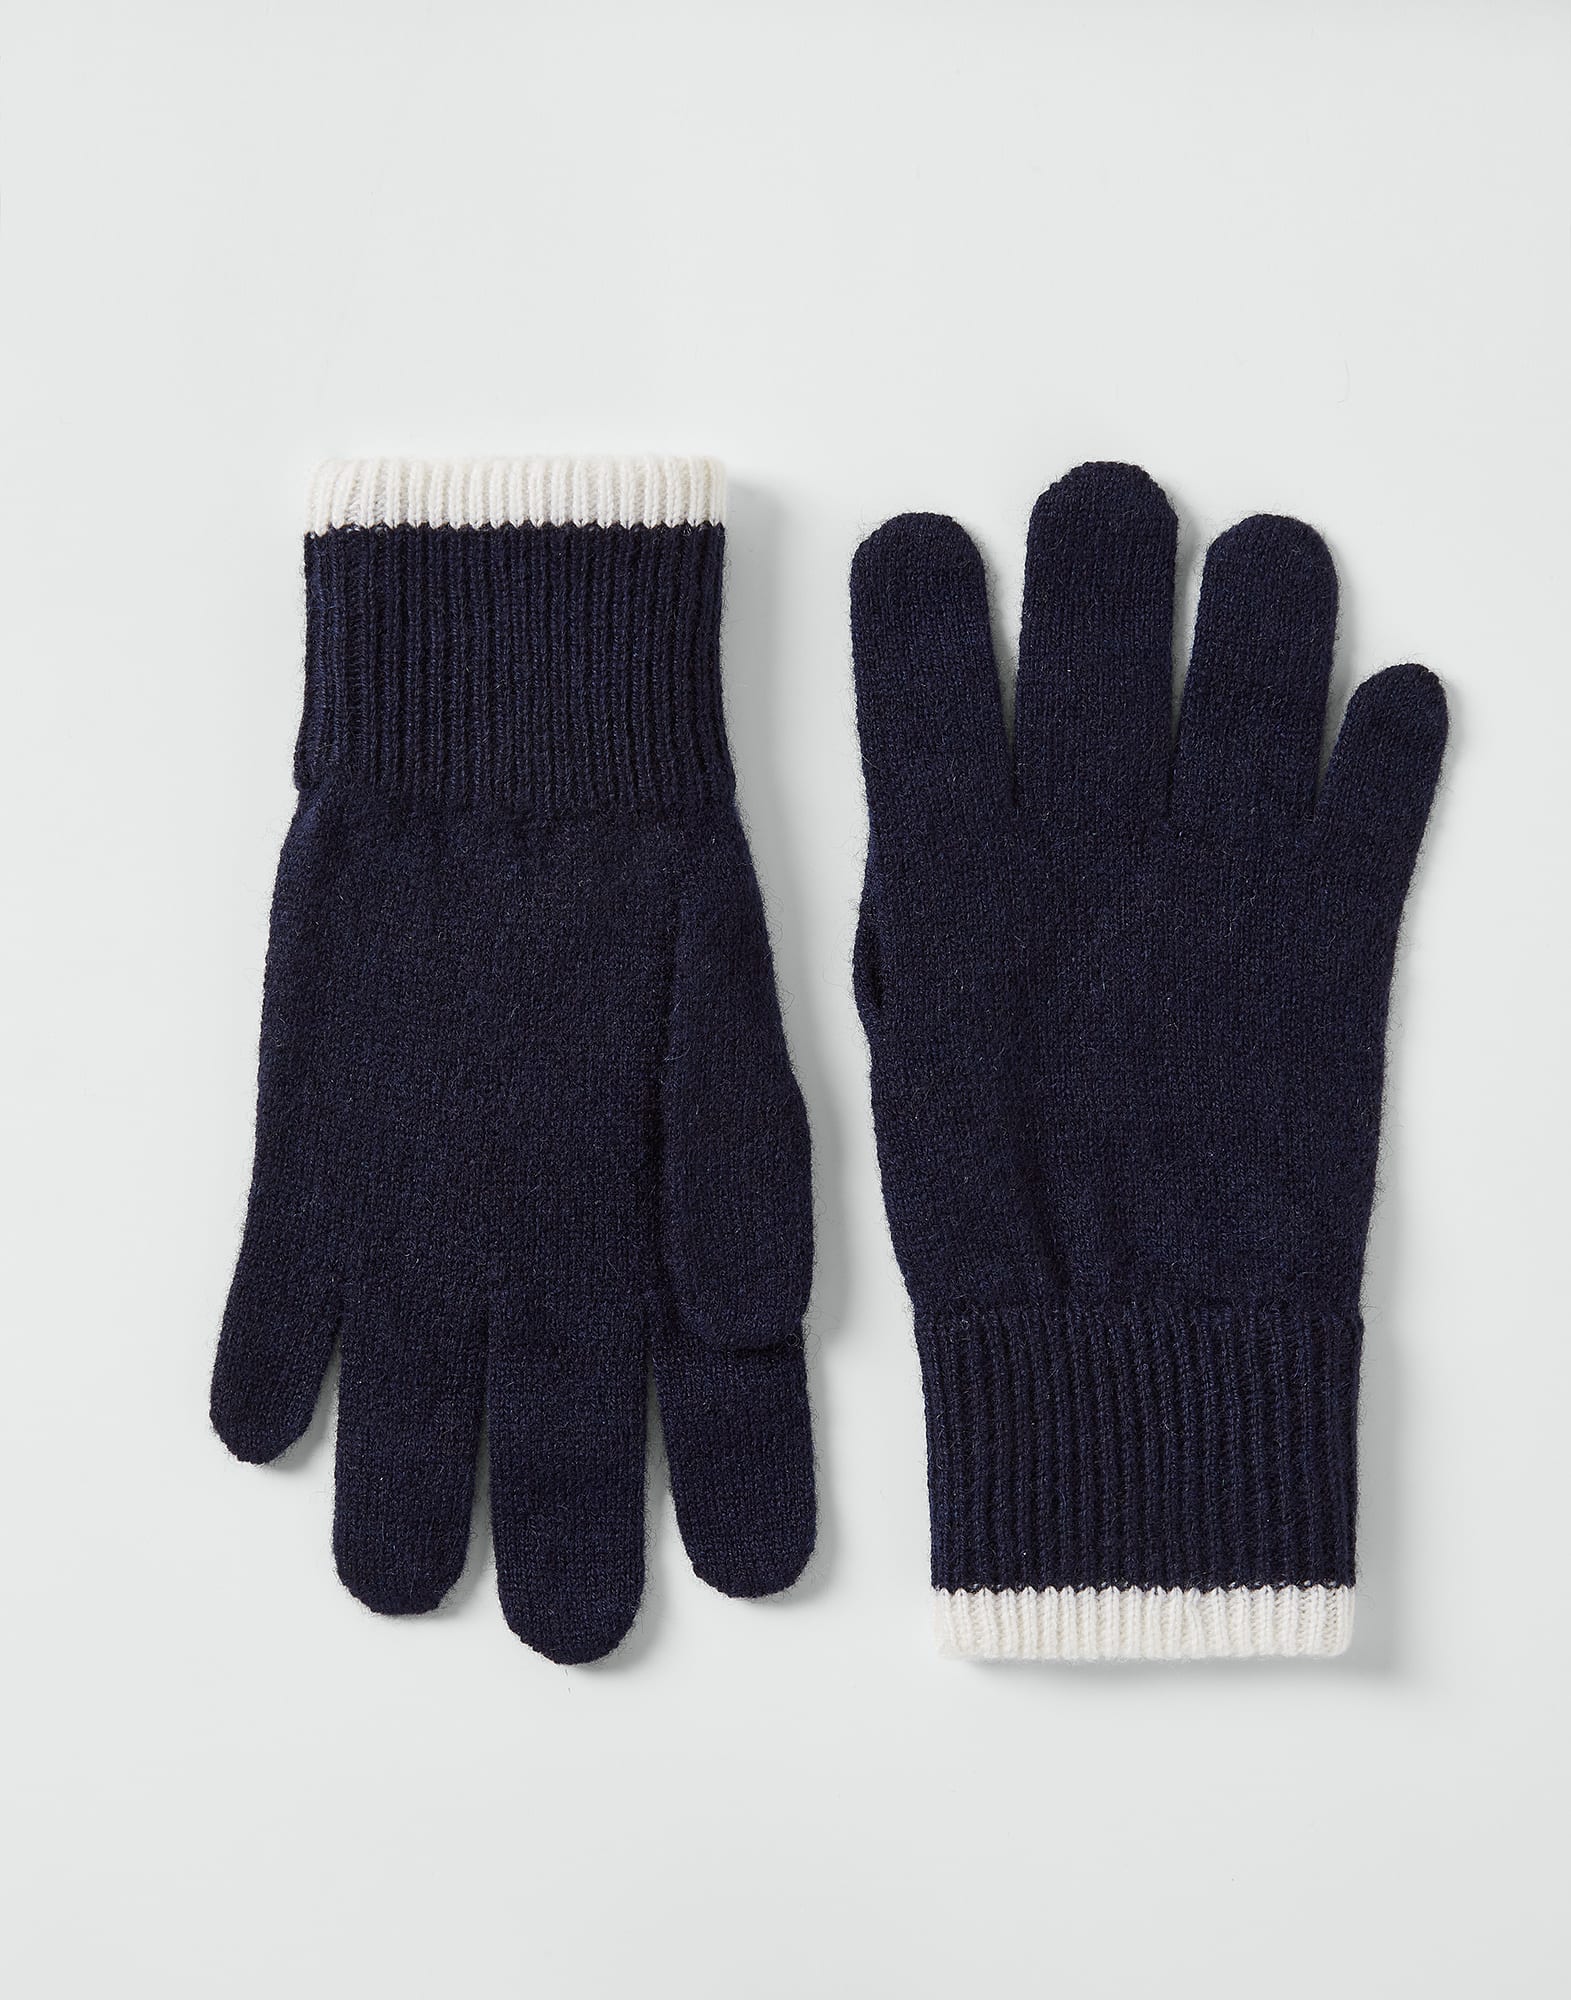 Knit gloves